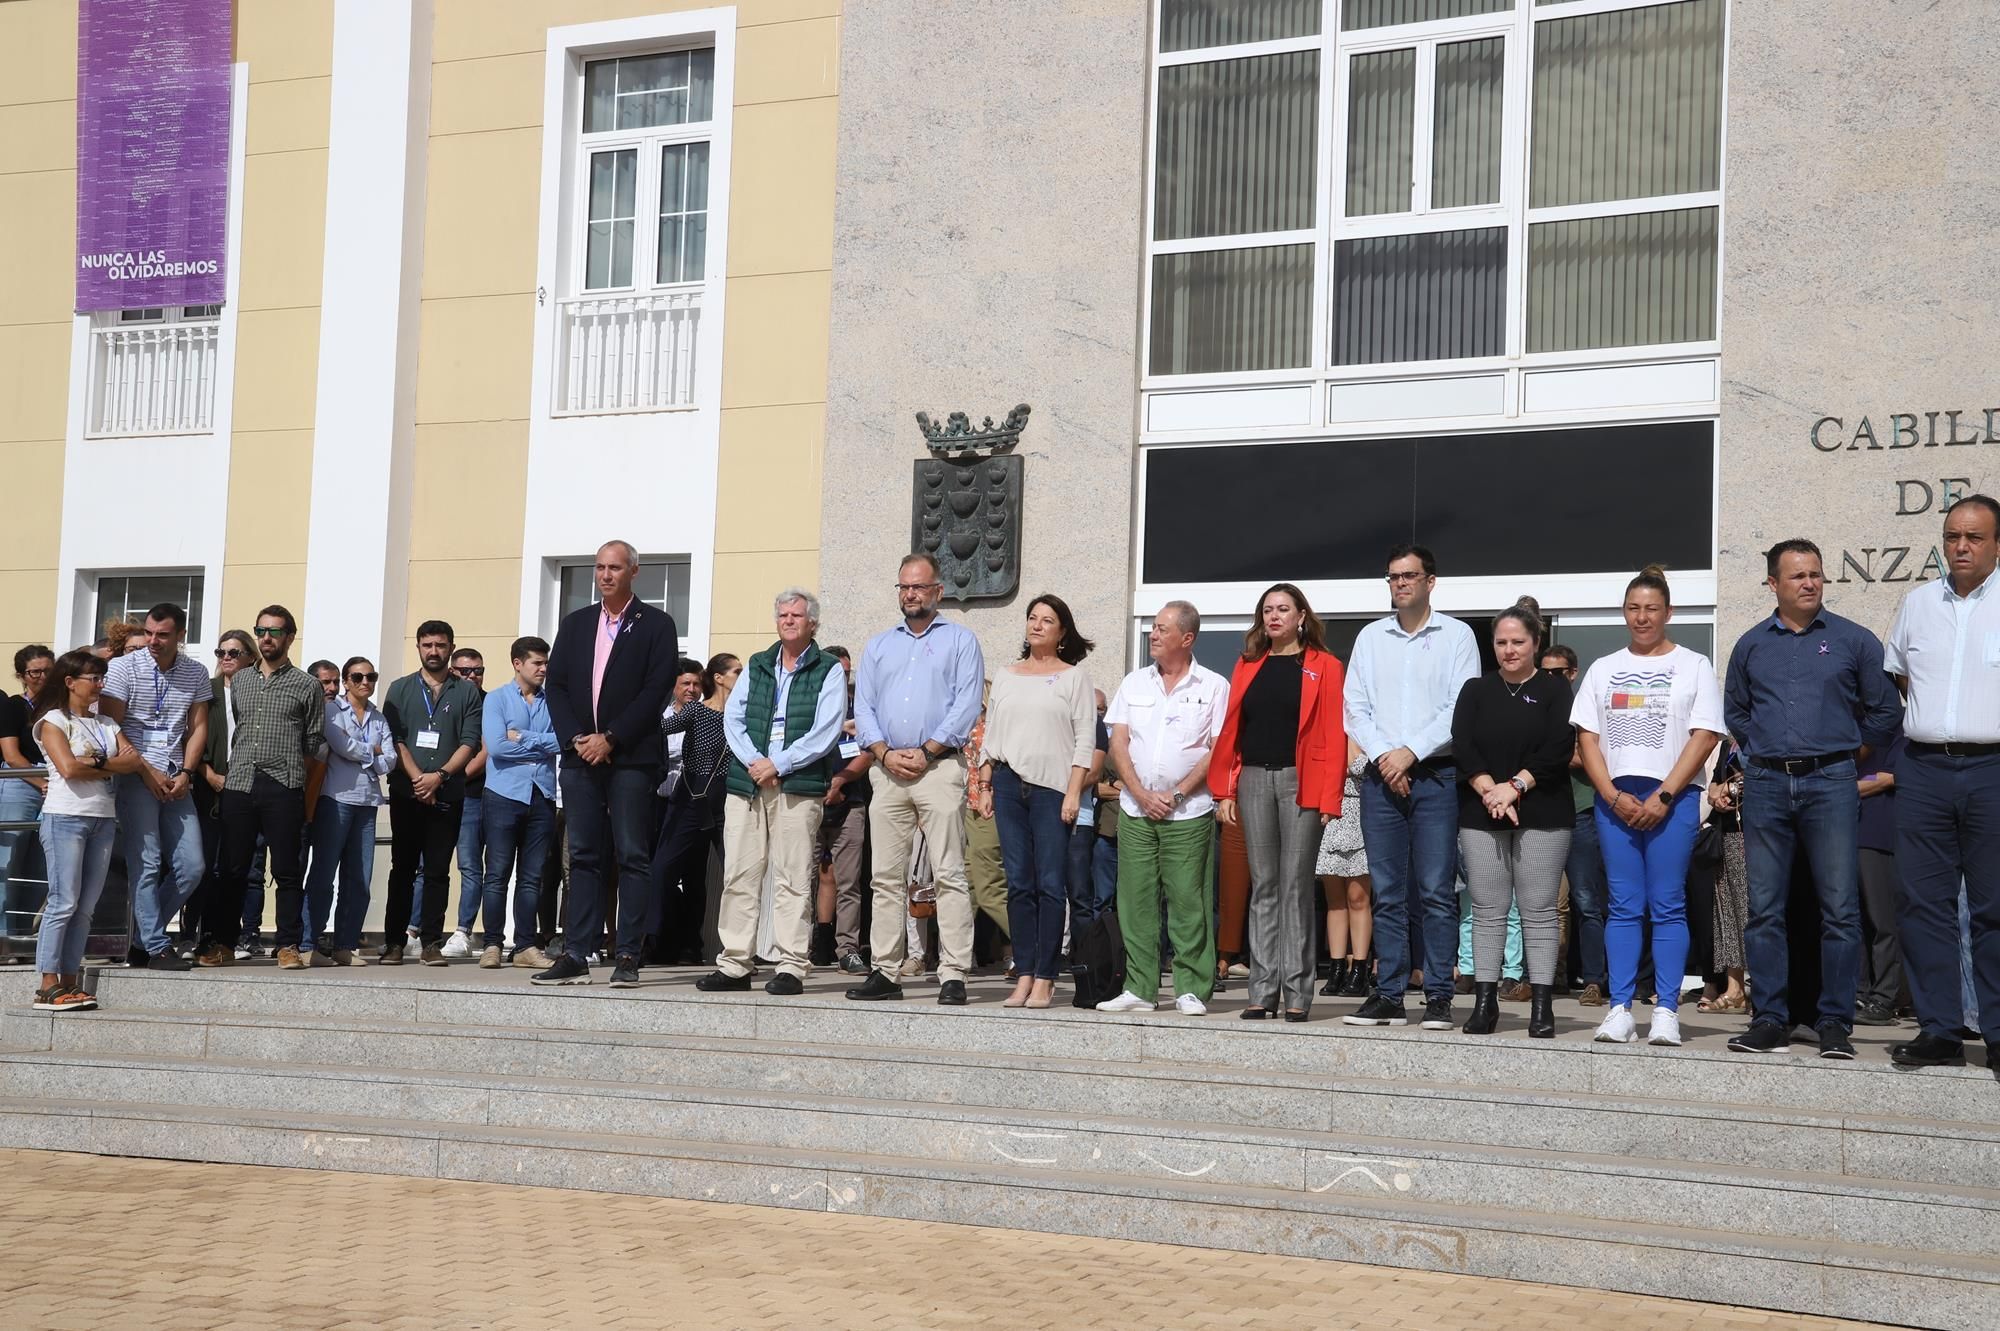 El Cabildo de Lanzarote ha guardado un minuto de silencio en recuerdo de todas las víctimas de la violencia machista